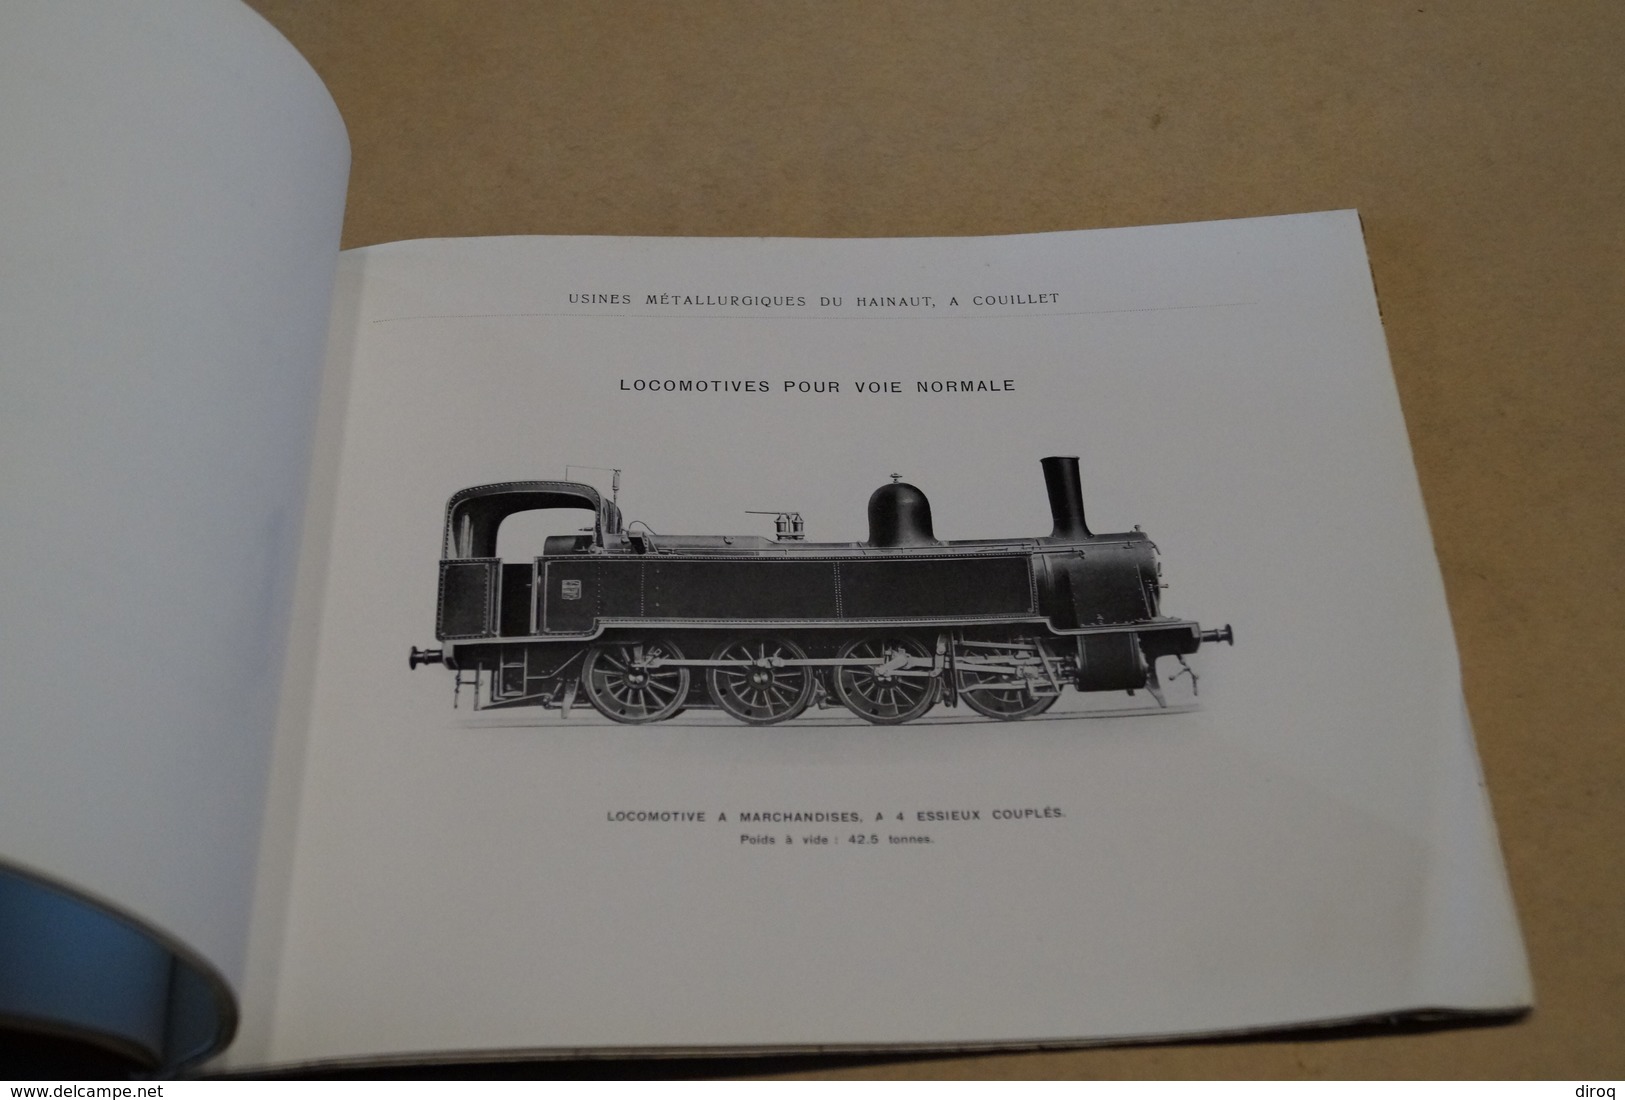 Train,Usines métallurgique du Hainaut,Locomotive,Couillet,superbe ouvrage,collection,35 pages,25 Cm. sur 18,5 Cm.